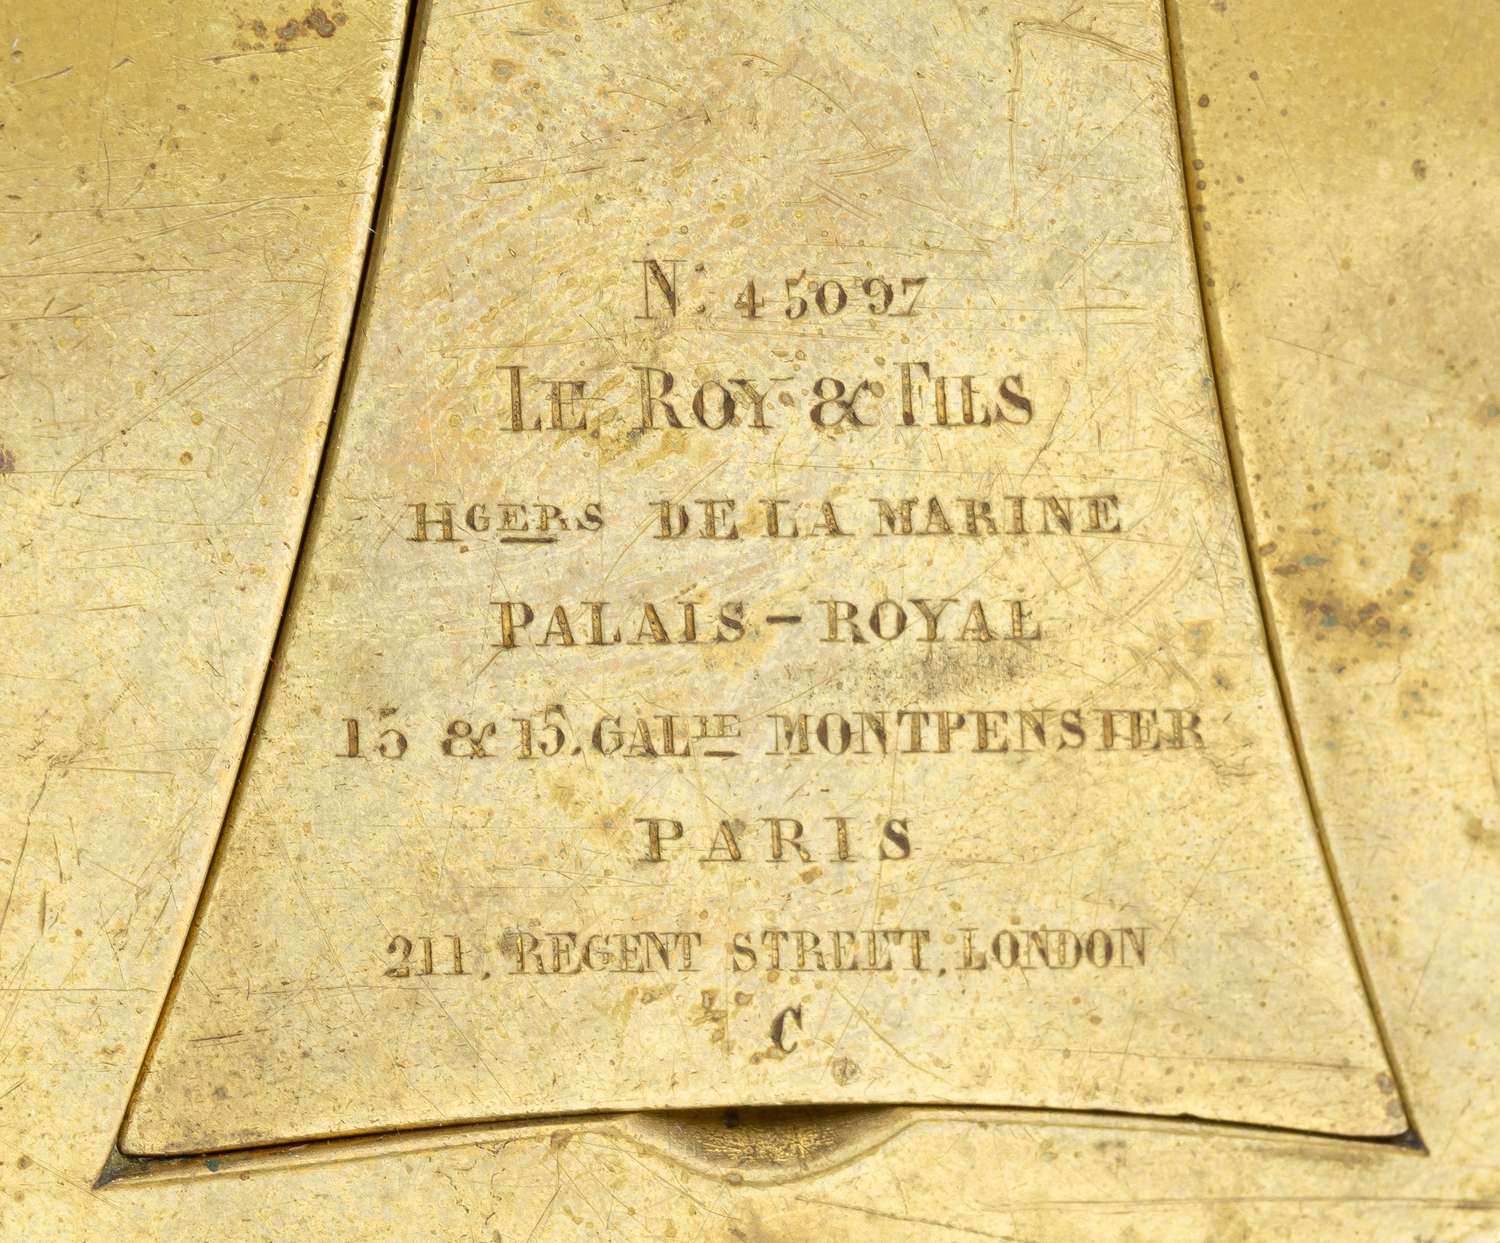 (Редкость. «Поставщик императорских дворов») Часы в виде навесного замка.<br>Франция, фирма Le Roy et Fils, вторая половина XIX века.